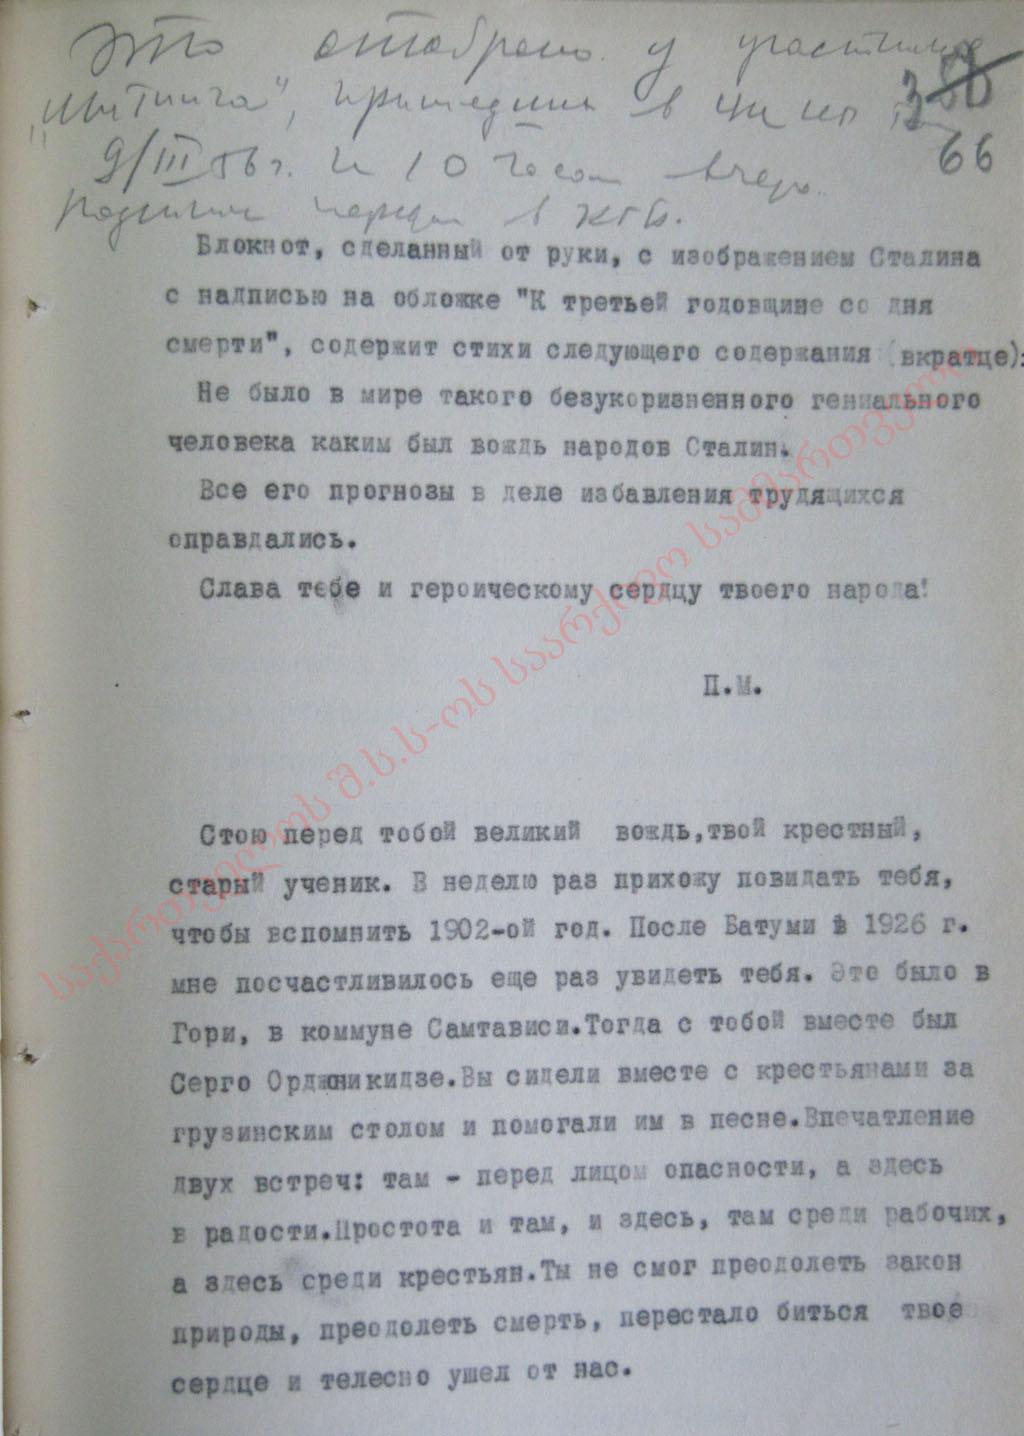 Письма и записки, адресованные президиуму митинга от 9 марта 1956 г.